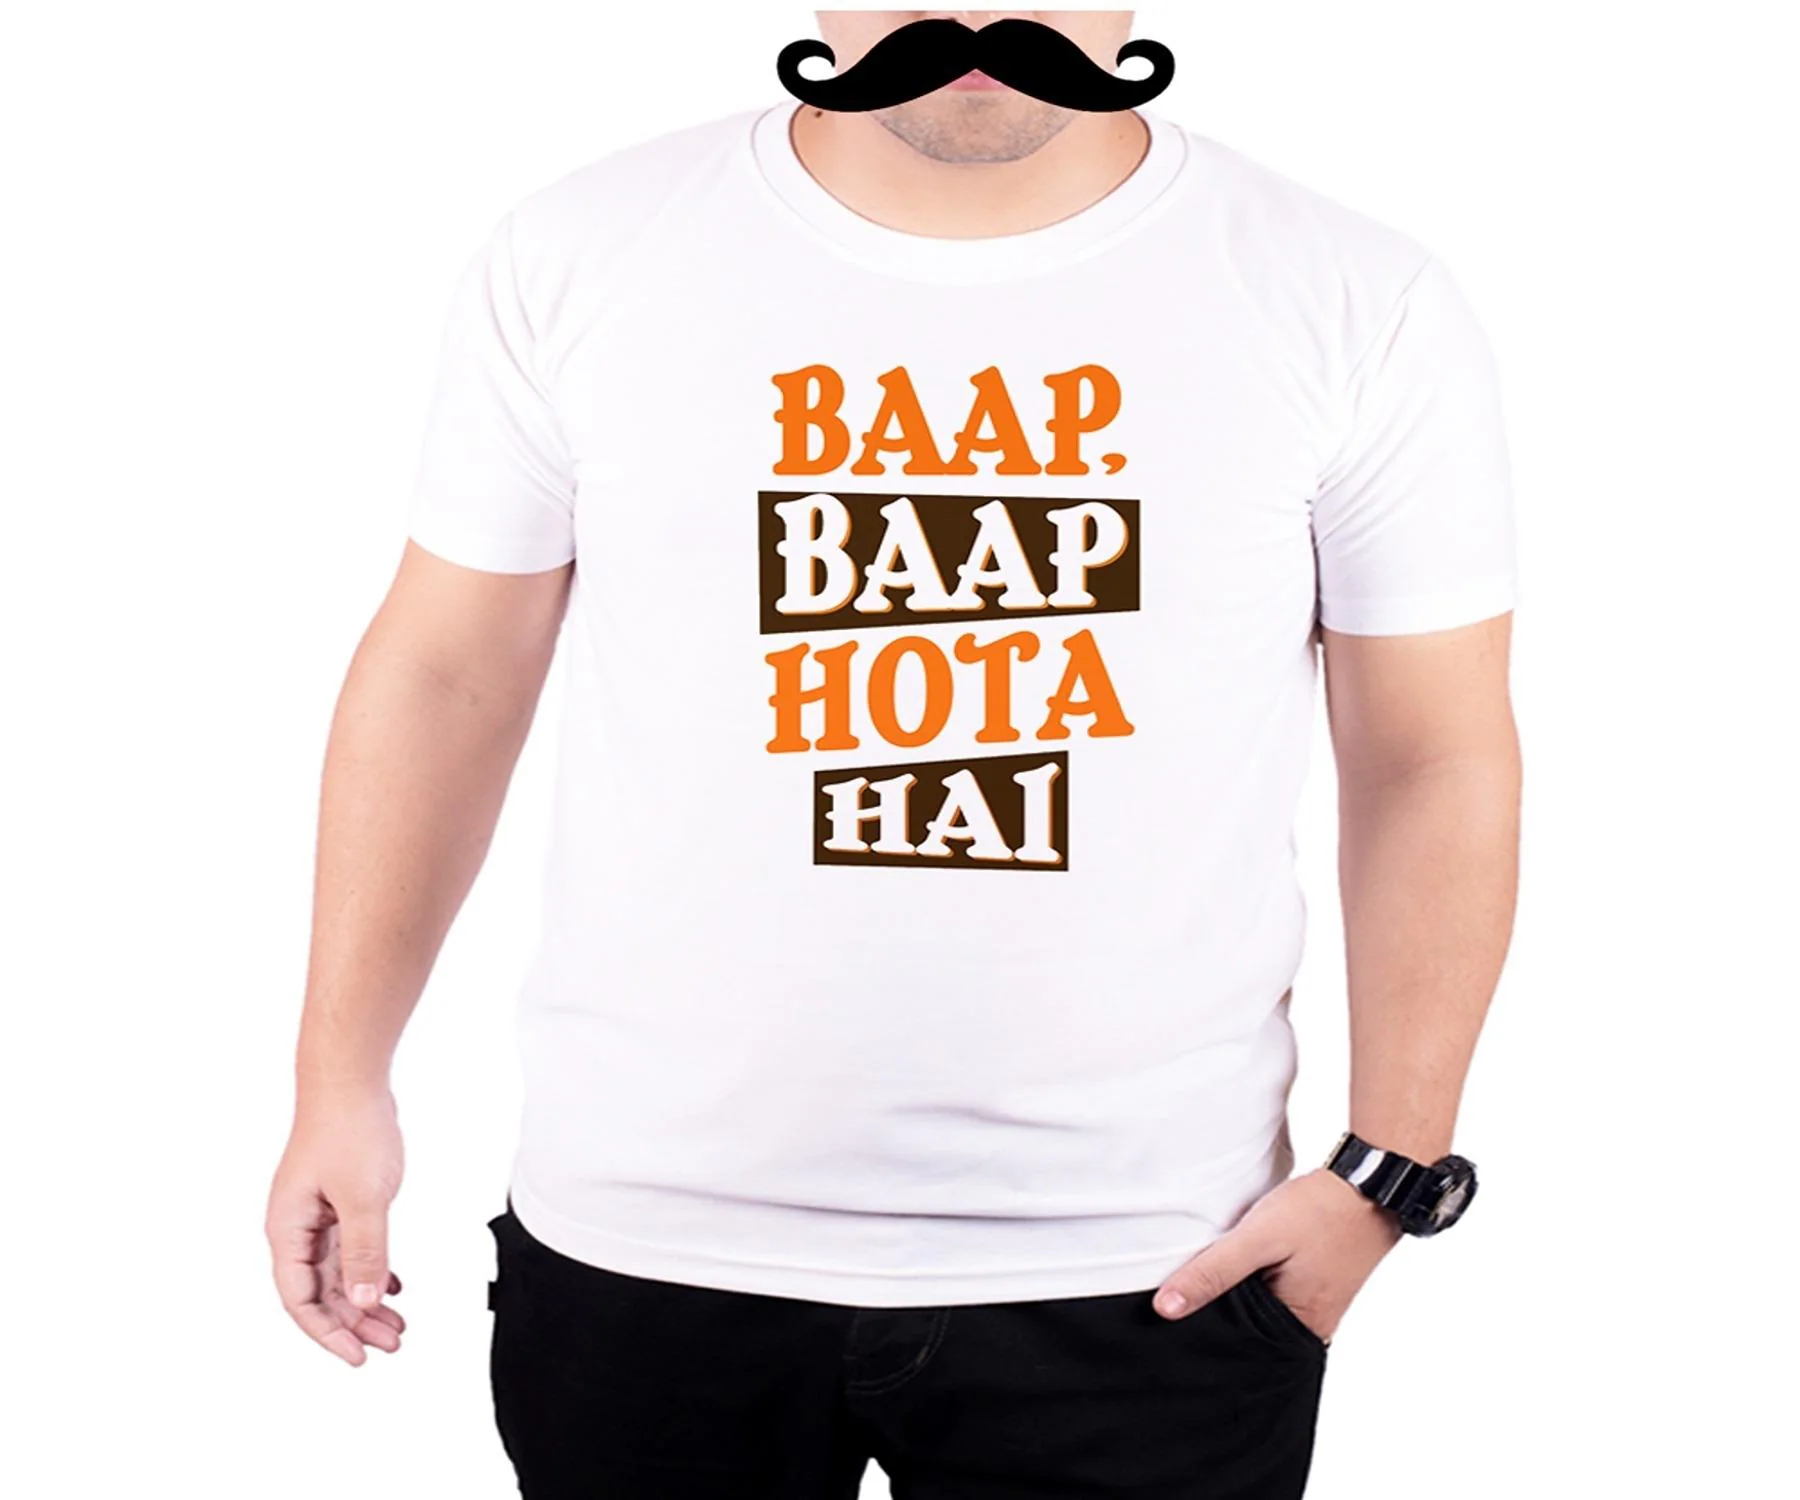 Mooch Wale Baap Baap Hota Hai White Quick-Dri T-shirt For Men - White, XL -  JioMart